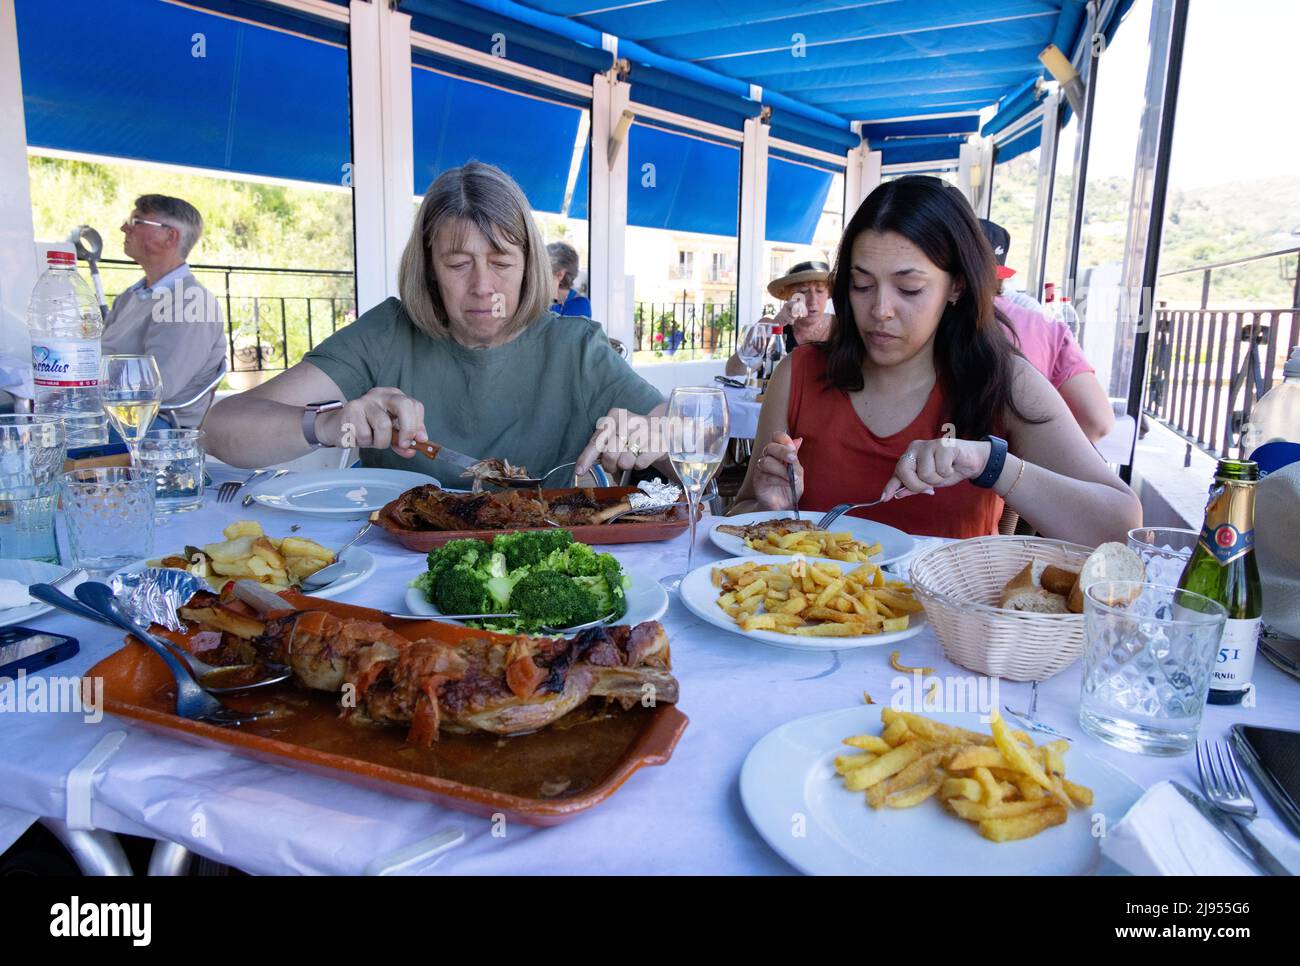 Restaurante español; dos mujeres comiendo carne en un restaurante durante el día, Andalucía, España Europa Foto de stock